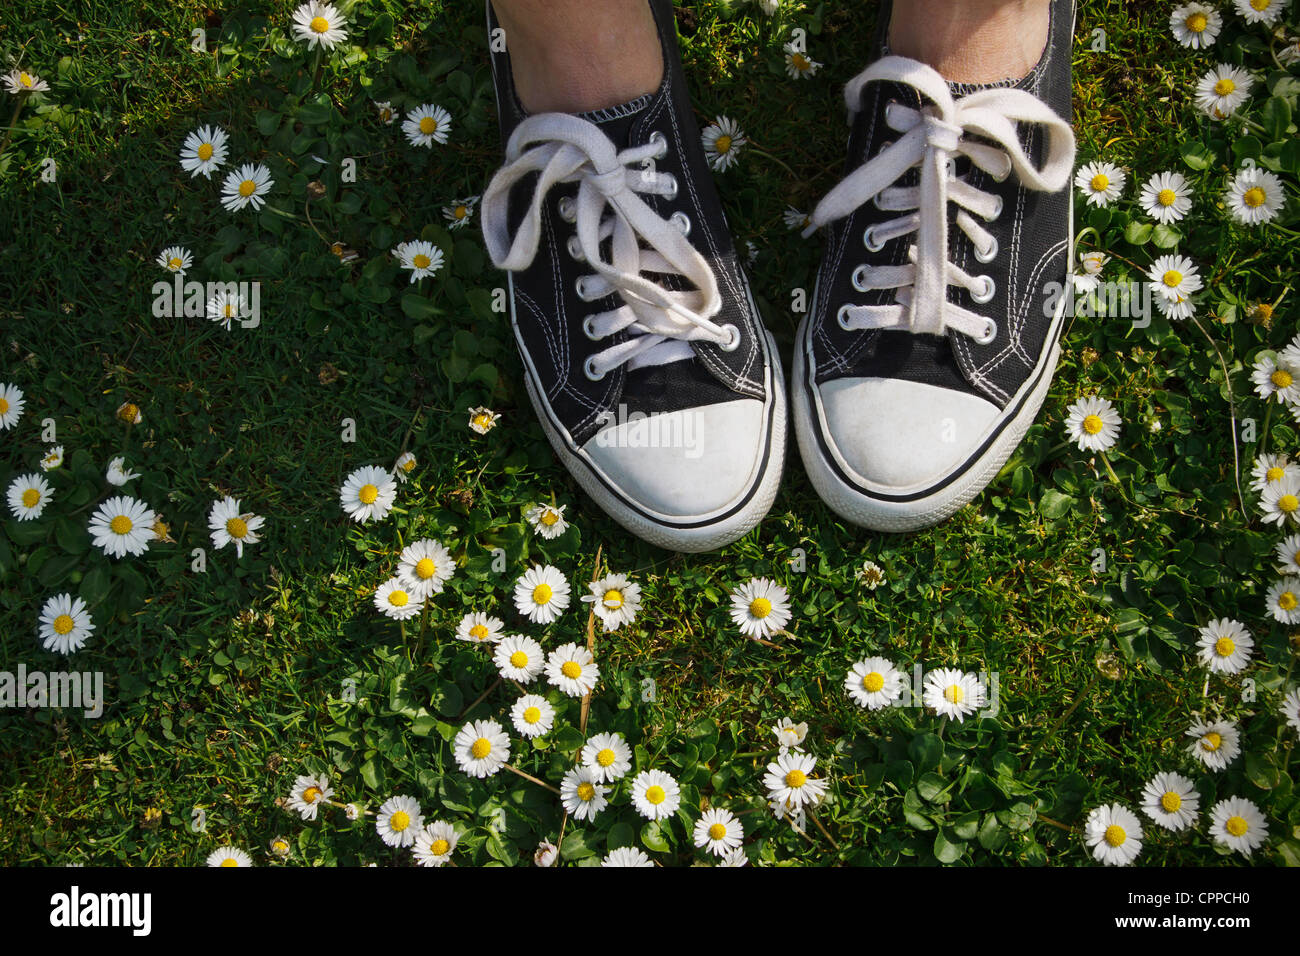 Ein Mädchen mit Converse Sneakers geht aber den Rasen mit Mini  Gänseblümchen bedeckt Stockfotografie - Alamy